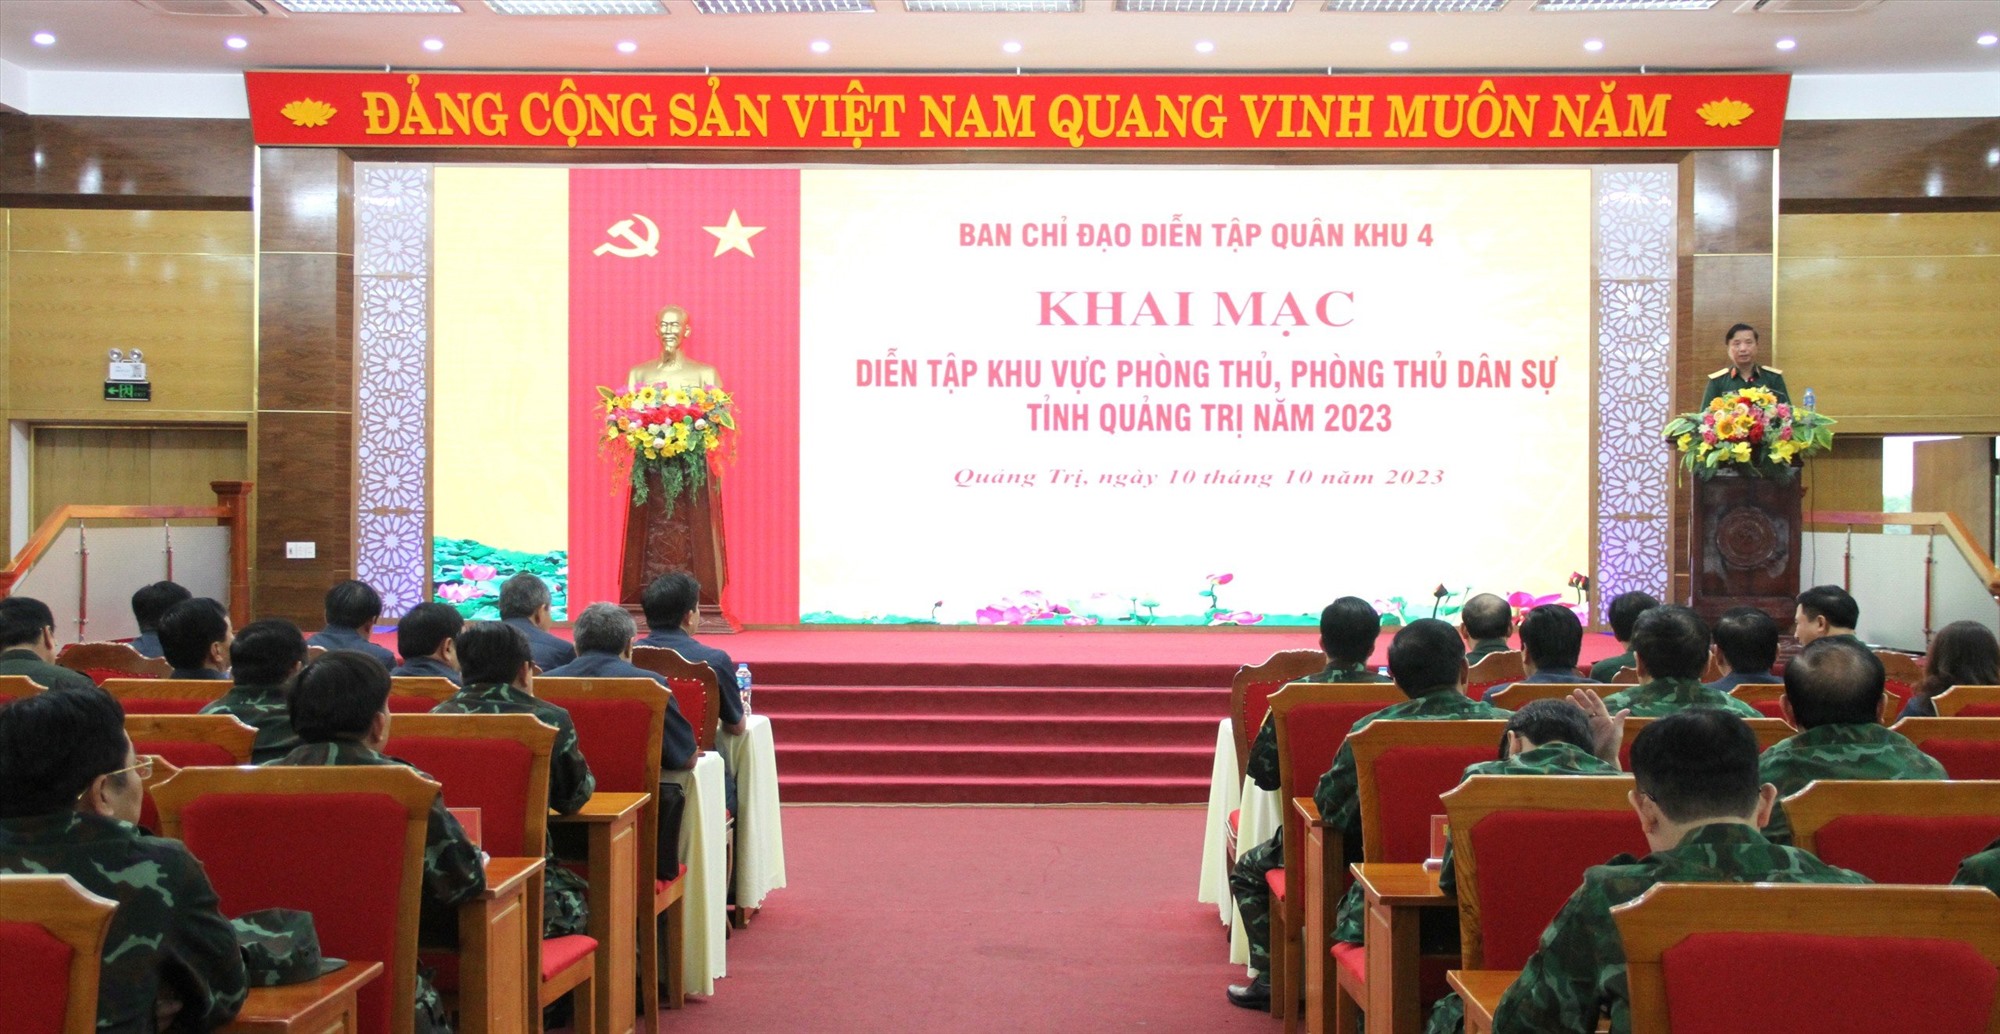 Quang cảnh khai mạc Diễn tập KVPT & PTDS tỉnh Quảng Trị năm 2023 - Ảnh: Minh Đức